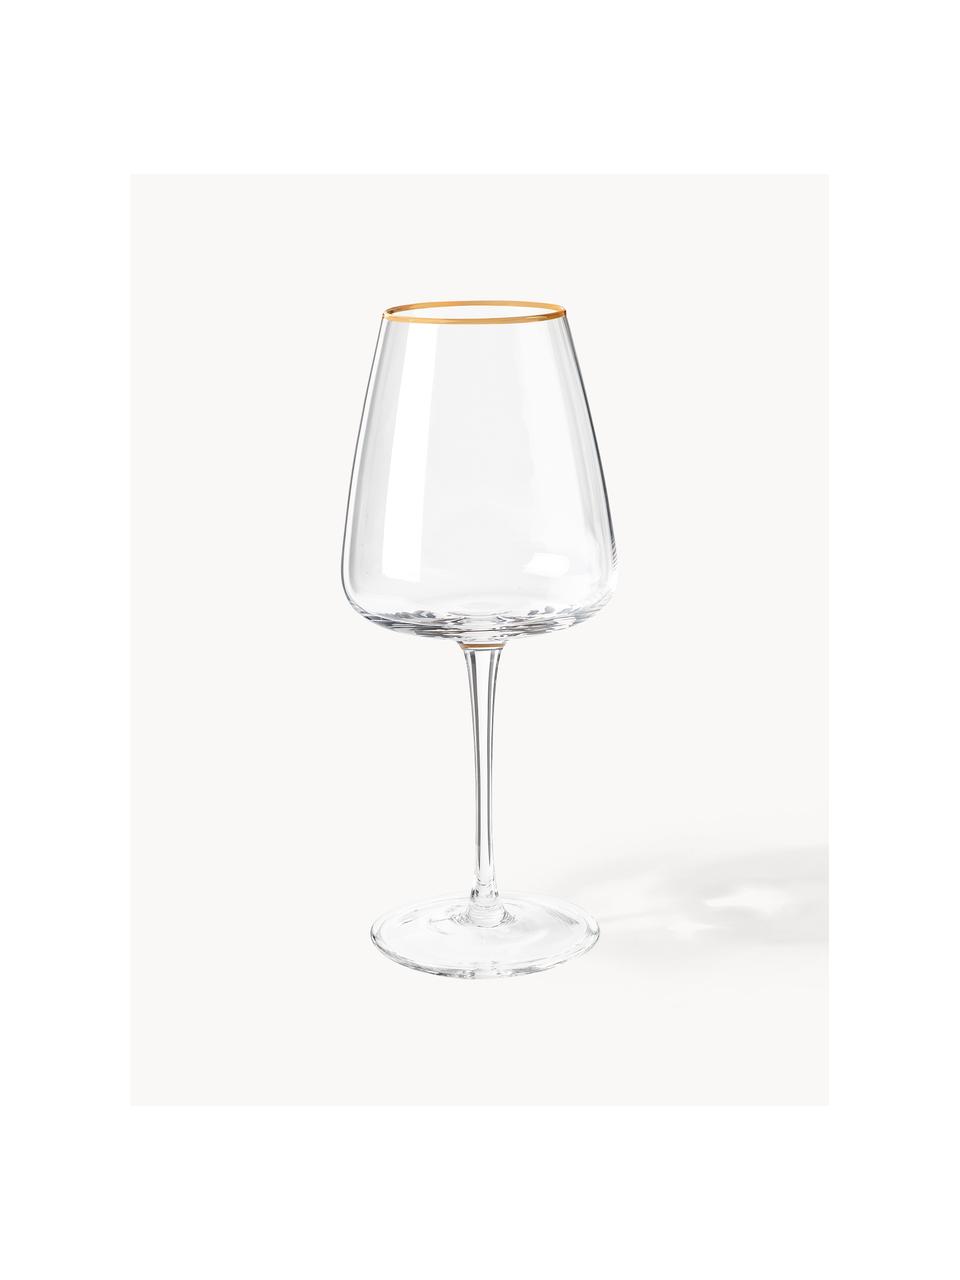 Mondgeblazen witte wijnglazen Ellery, 4 stuks, Glas, Transparant met gouden rand, Ø 9 x H 21 cm, 400 ml